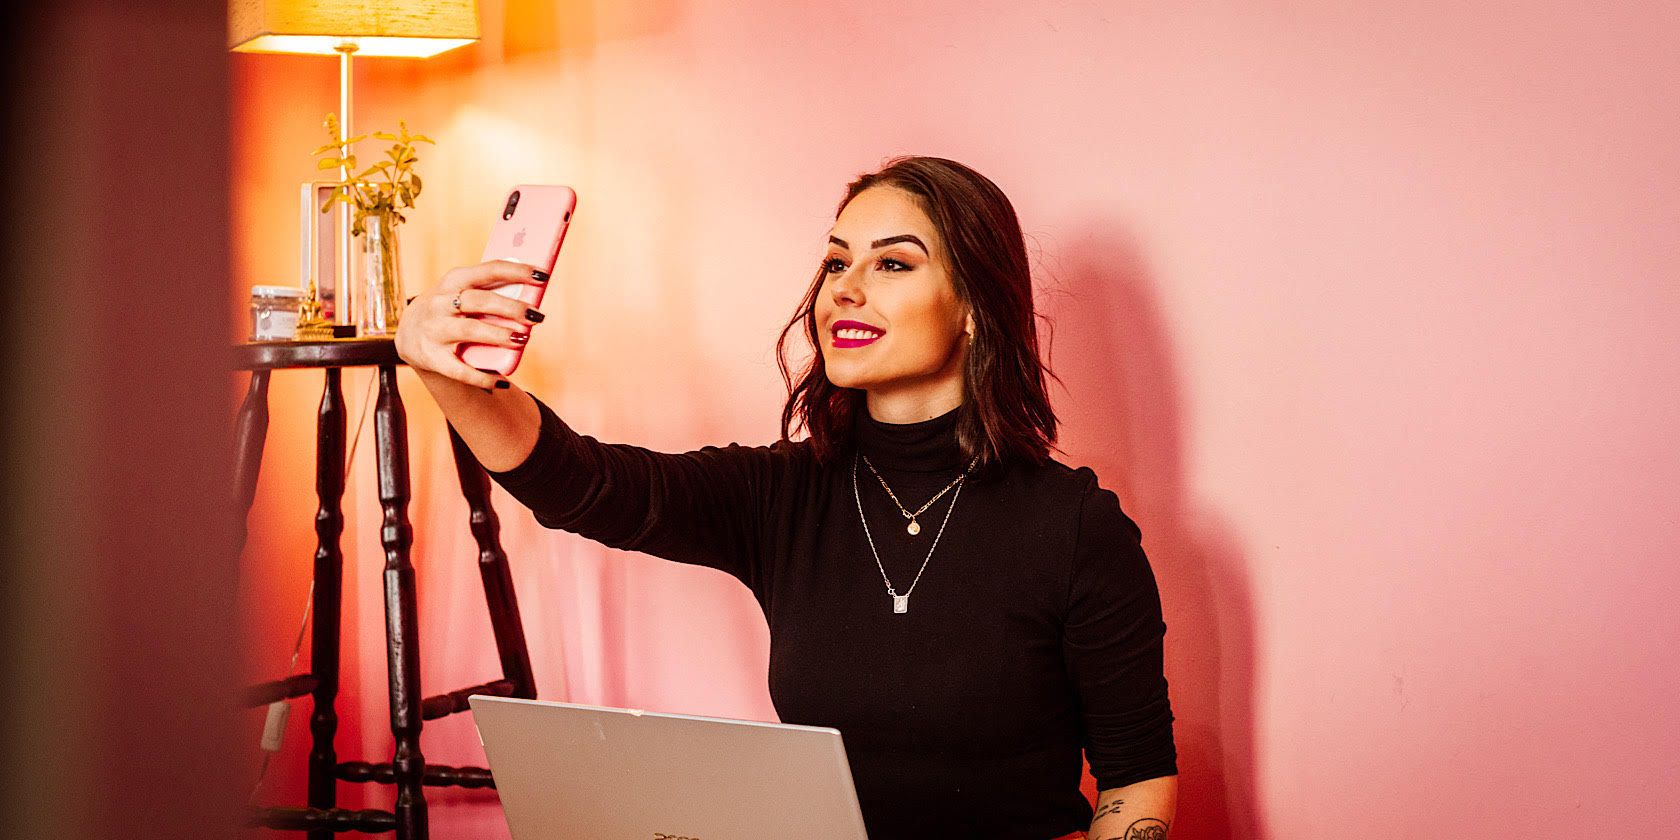 Woman Taking a Selfie in Room